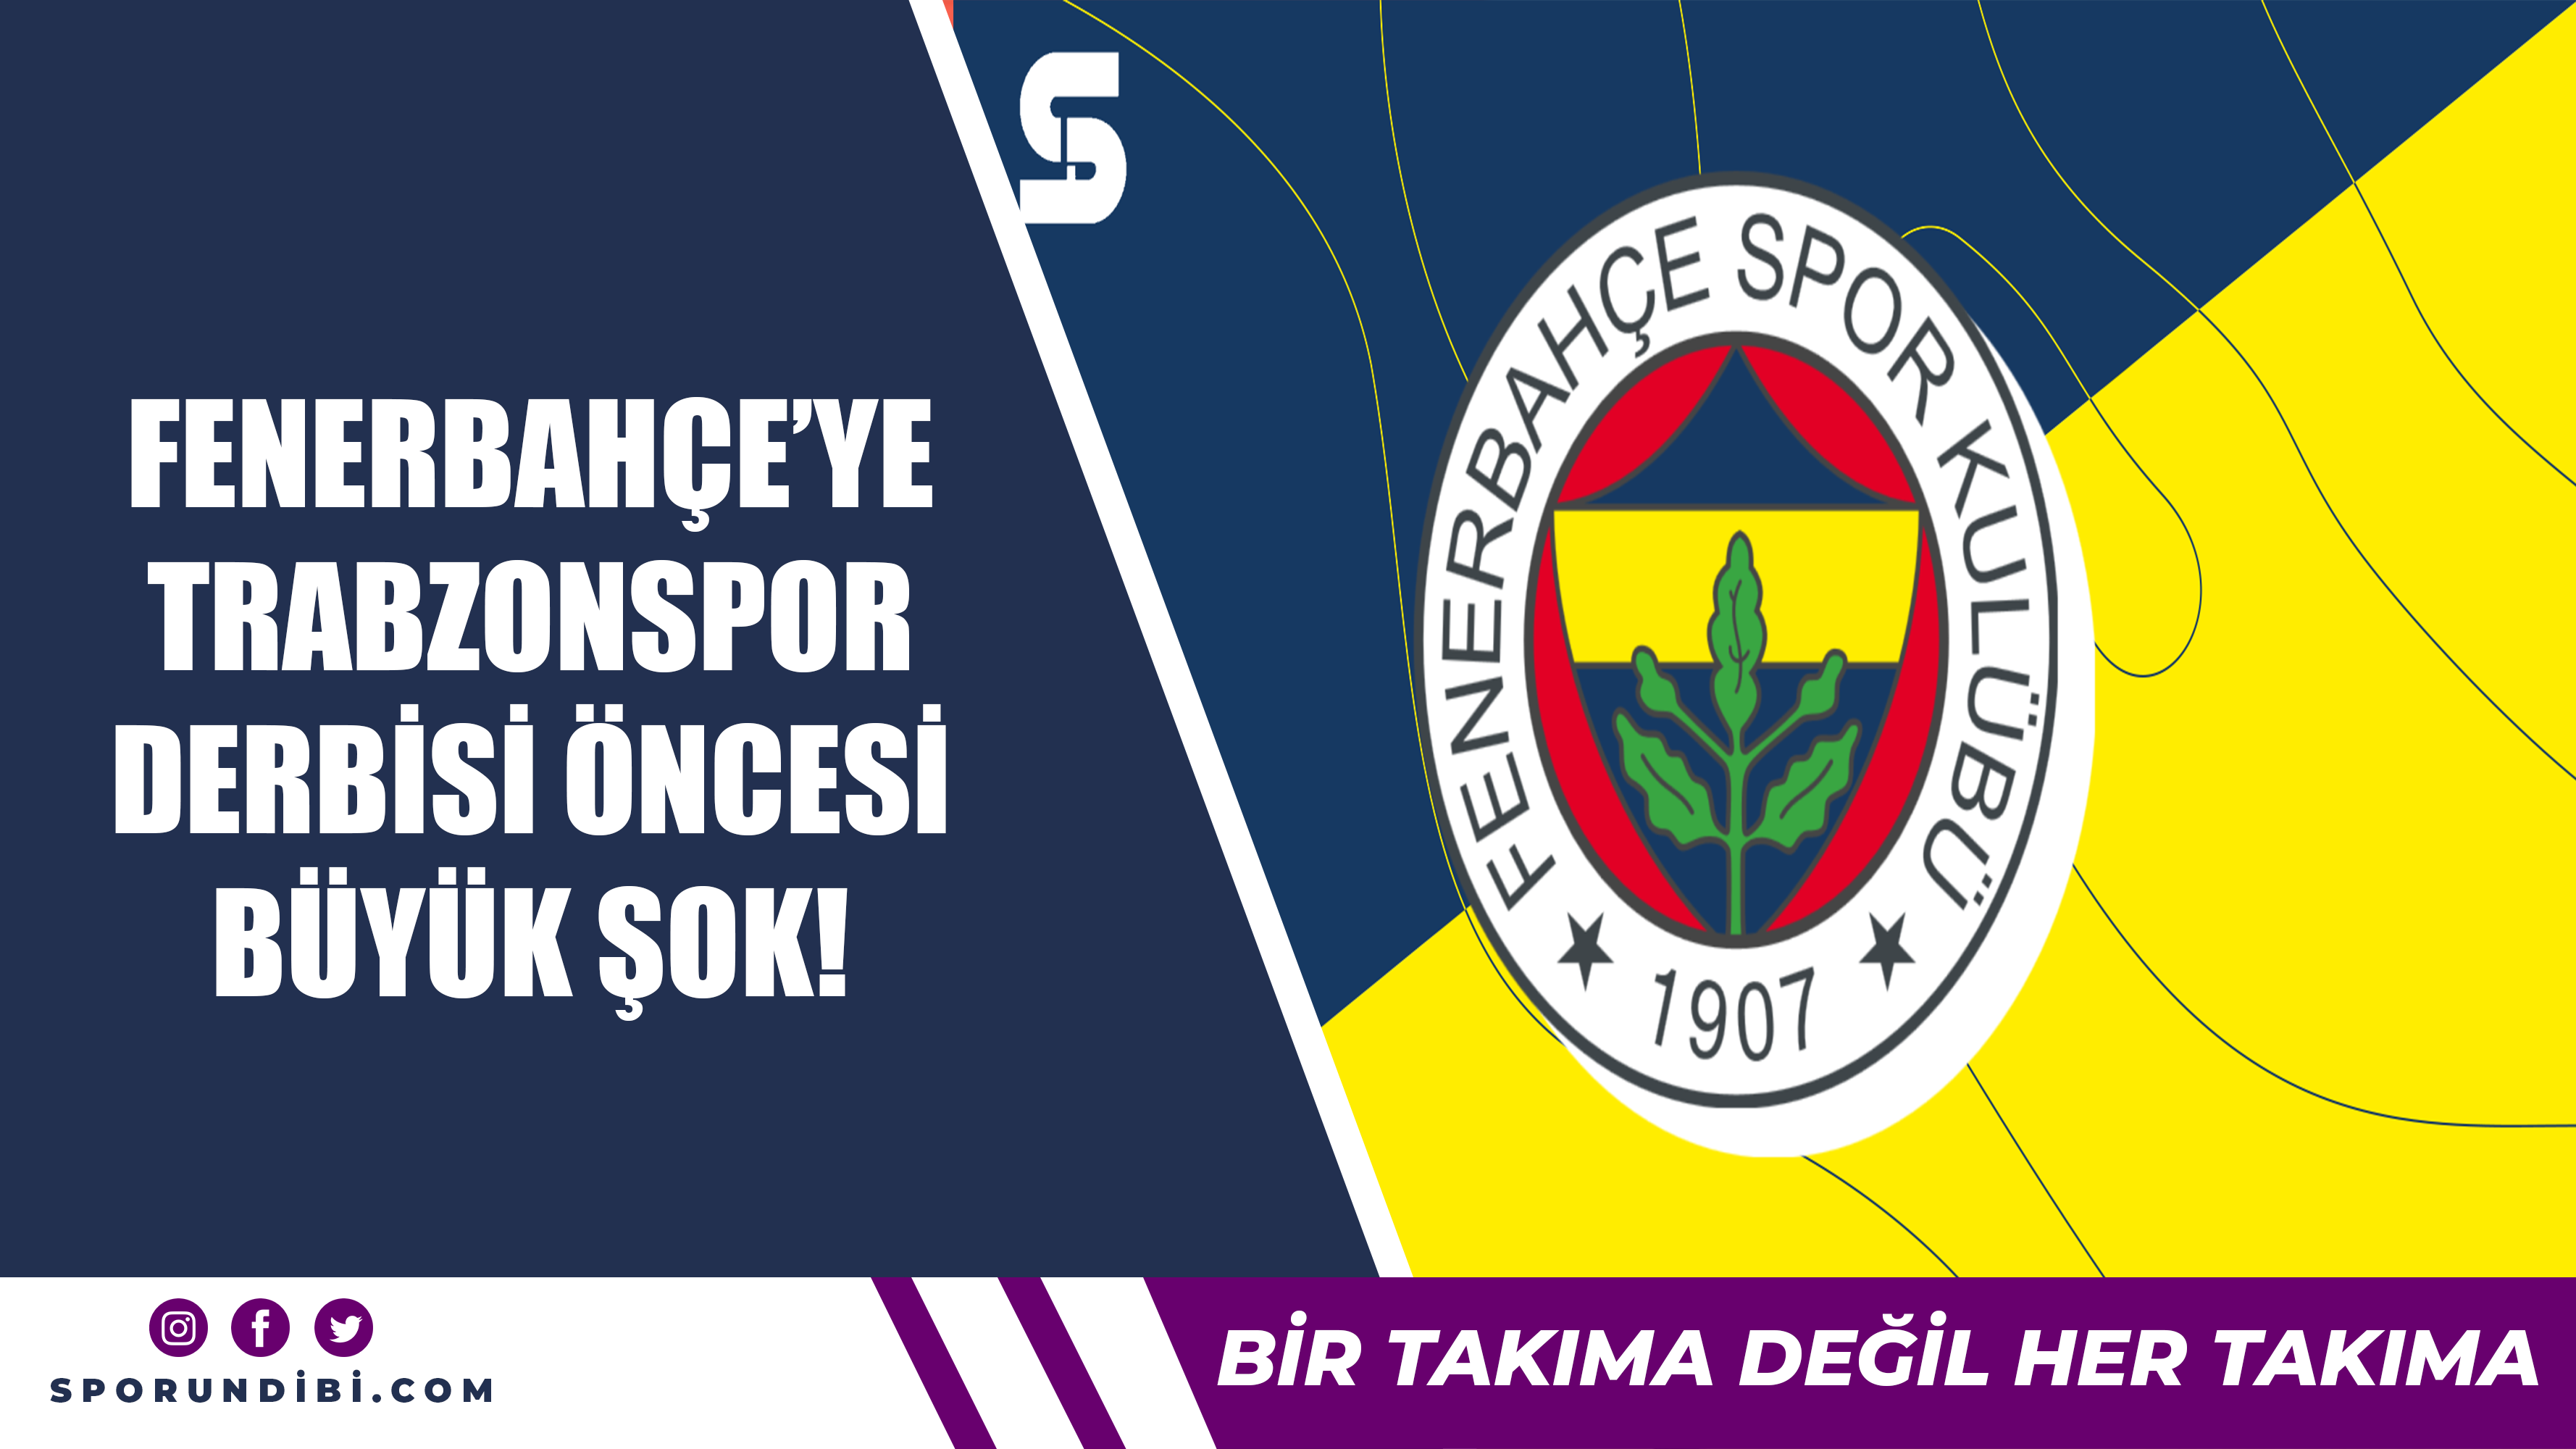 Fenerbahçe'ye Trabzonspor derbisi öncesi büyük şok!